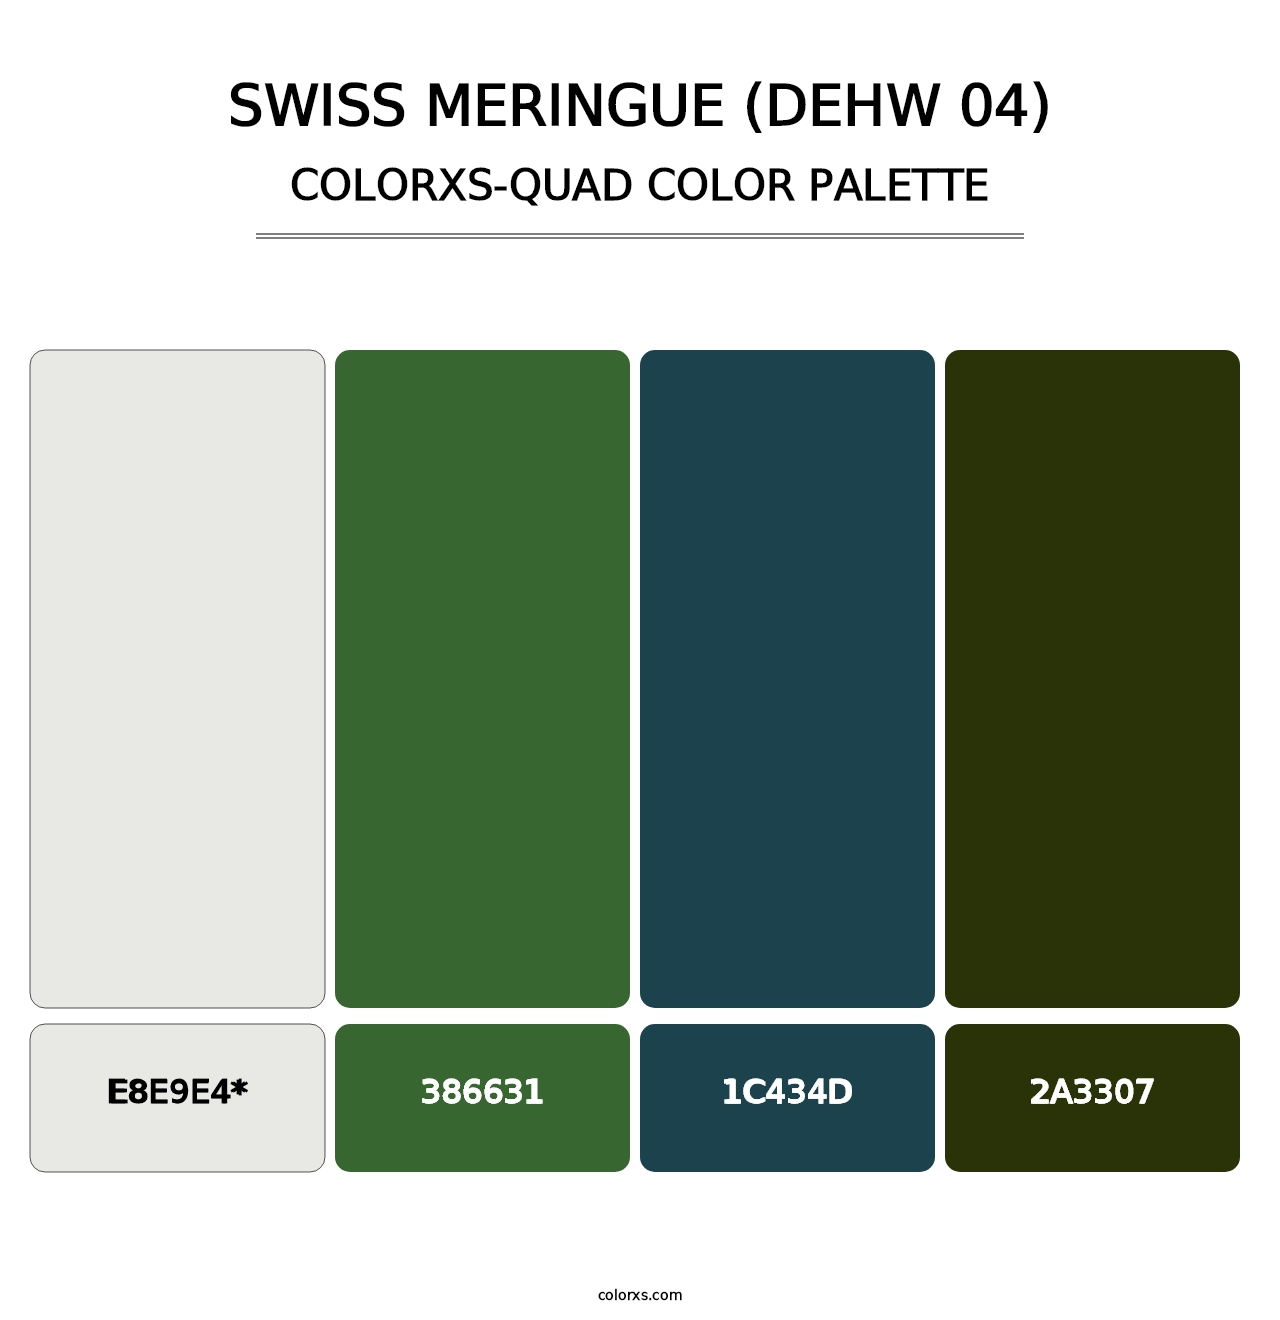 Swiss Meringue (DEHW 04) - Colorxs Quad Palette